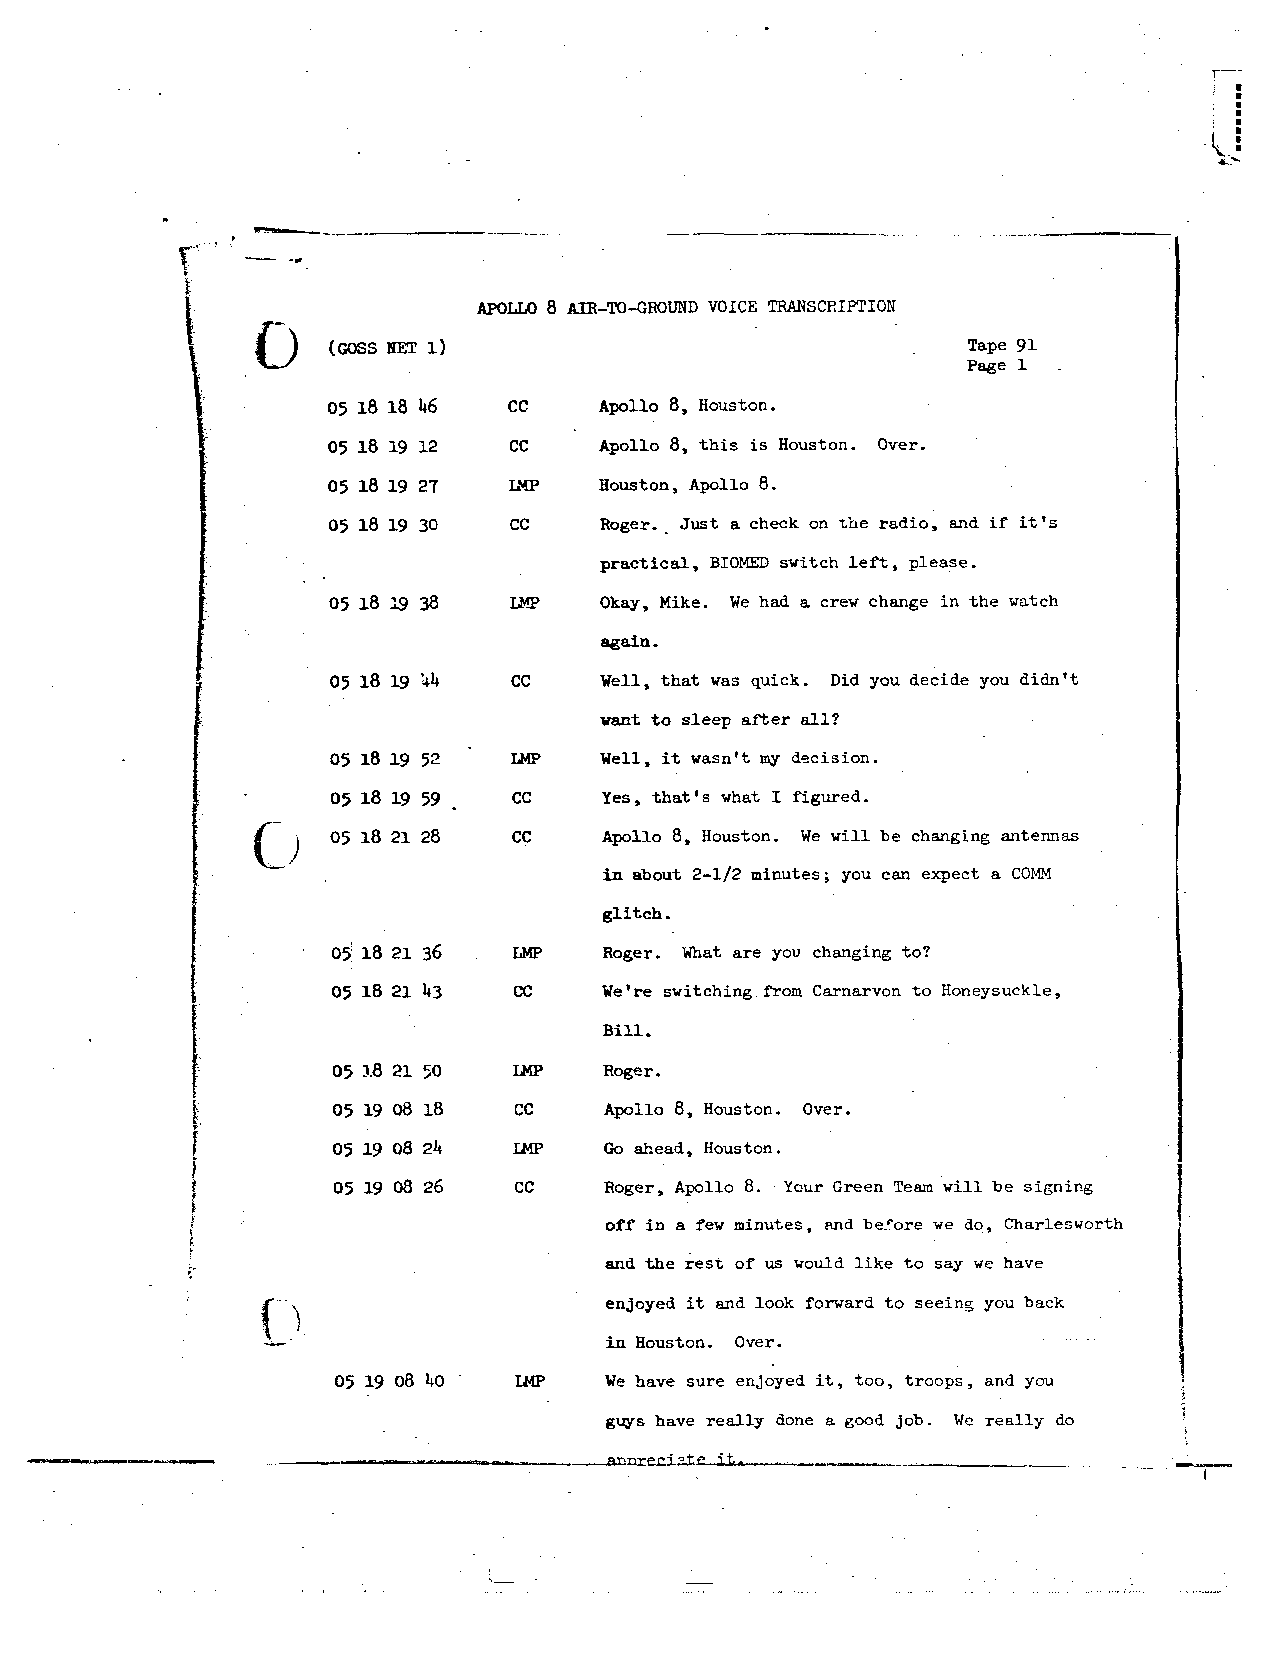 Page 726 of Apollo 8’s original transcript